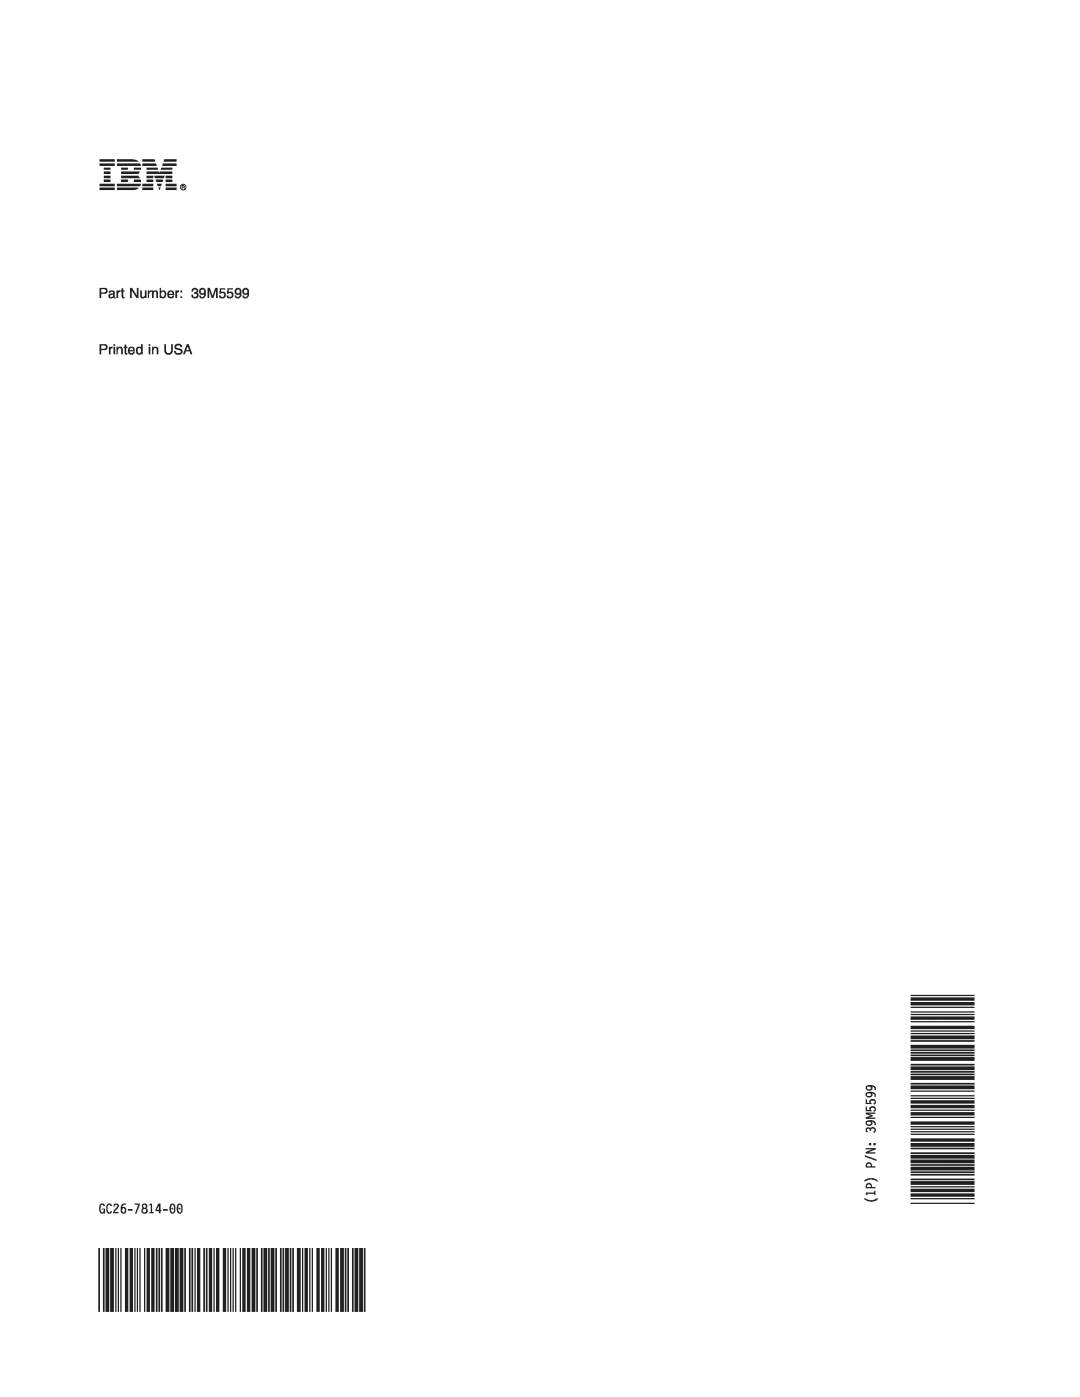 IBM DS4000 FC manual Part Number 39M5599 Printed in USA, GC26-7814-00, 1P P/N 39M5599 